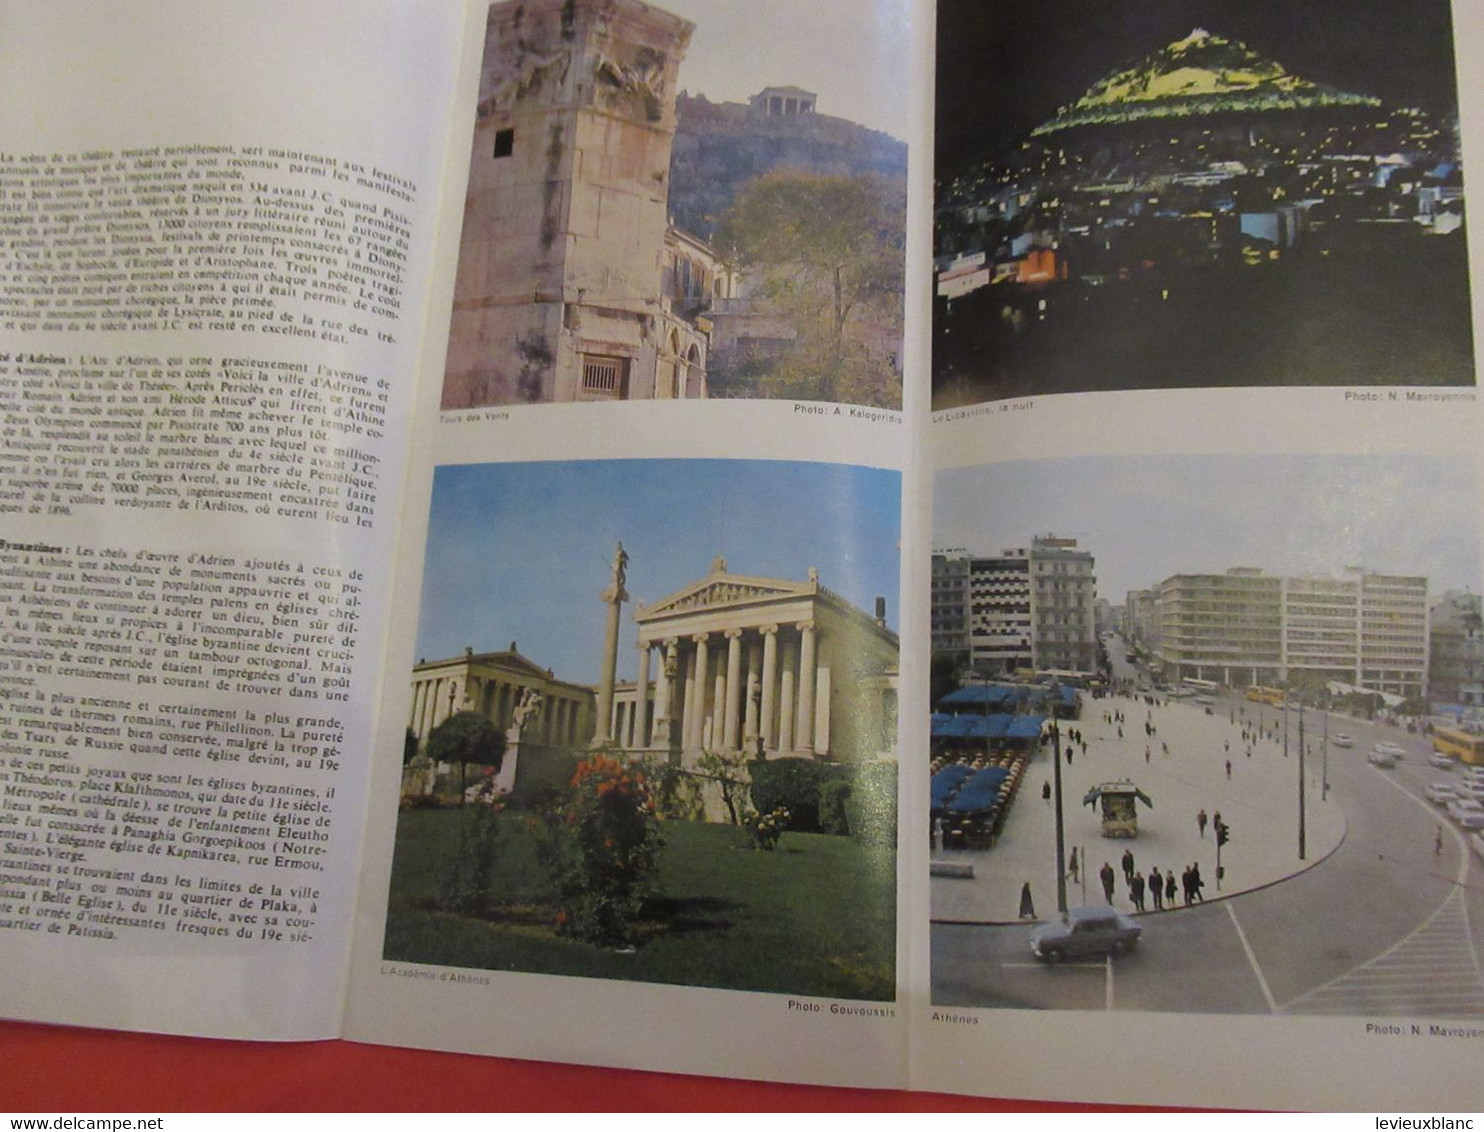 GRECE/Athénes/ L'Attique- Les iles du Saronique / Illustré, avec liste des hotels / 1969              PGC477